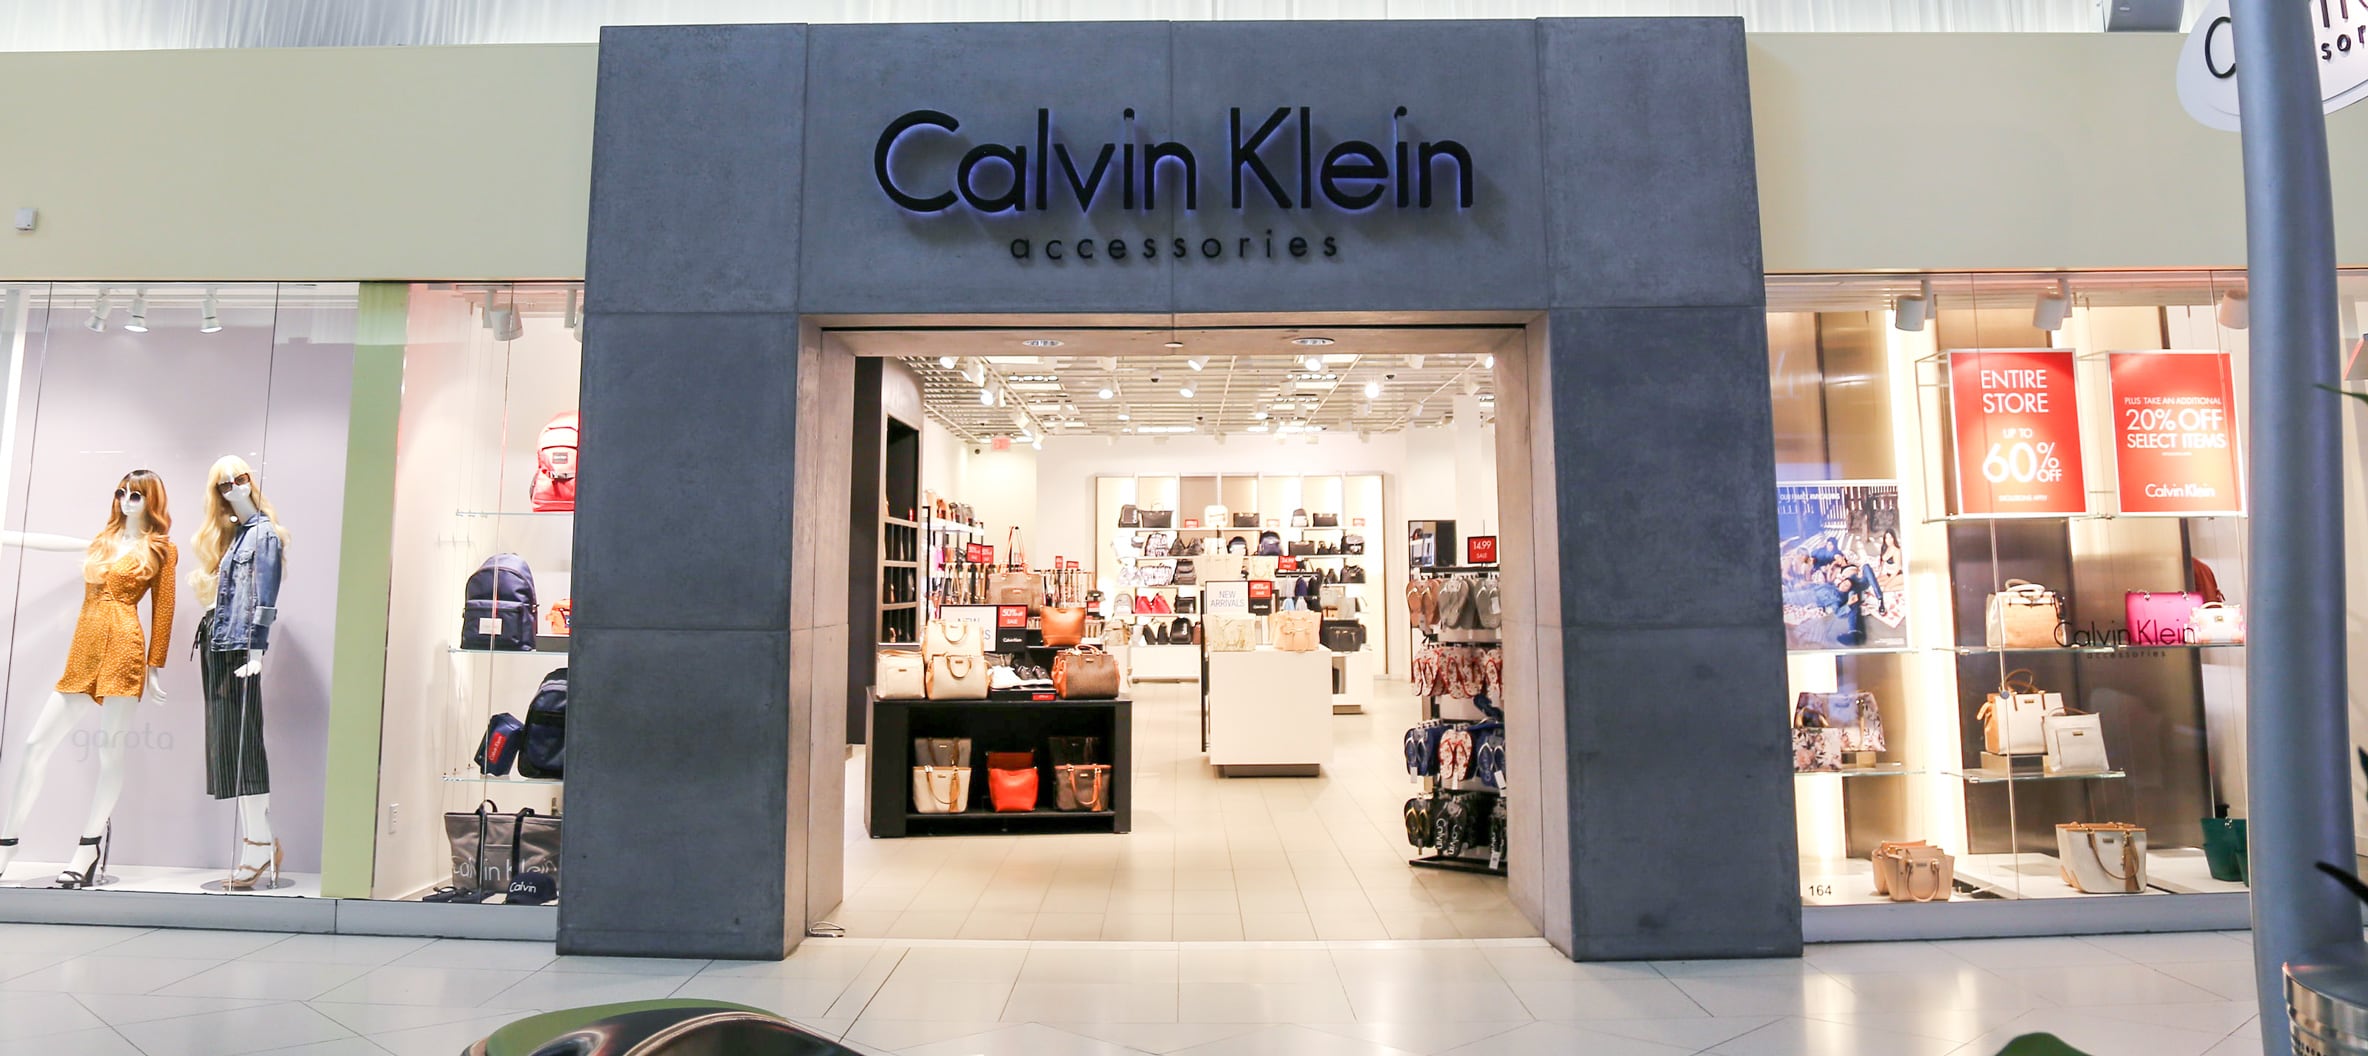 calvin klein accessories store